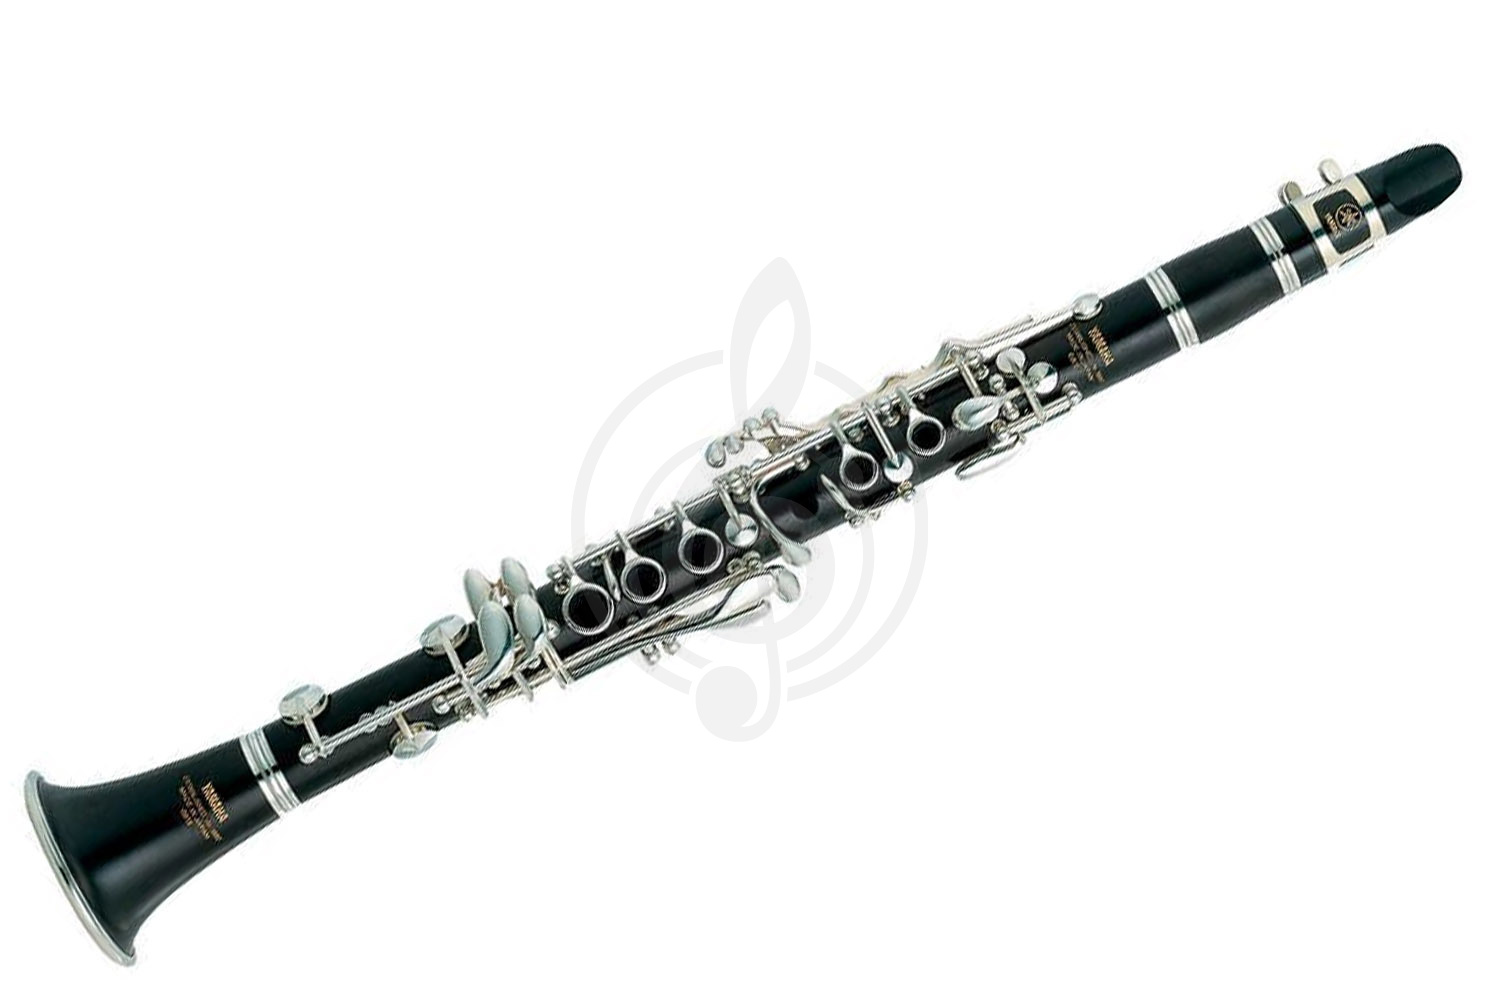 Кларнет Кларнеты Yamaha Yamaha YCL-681II - кларнет Eb профессиональный, корп. чёрн. дерево, 17 keys, 6 rings YCL-681II - фото 1